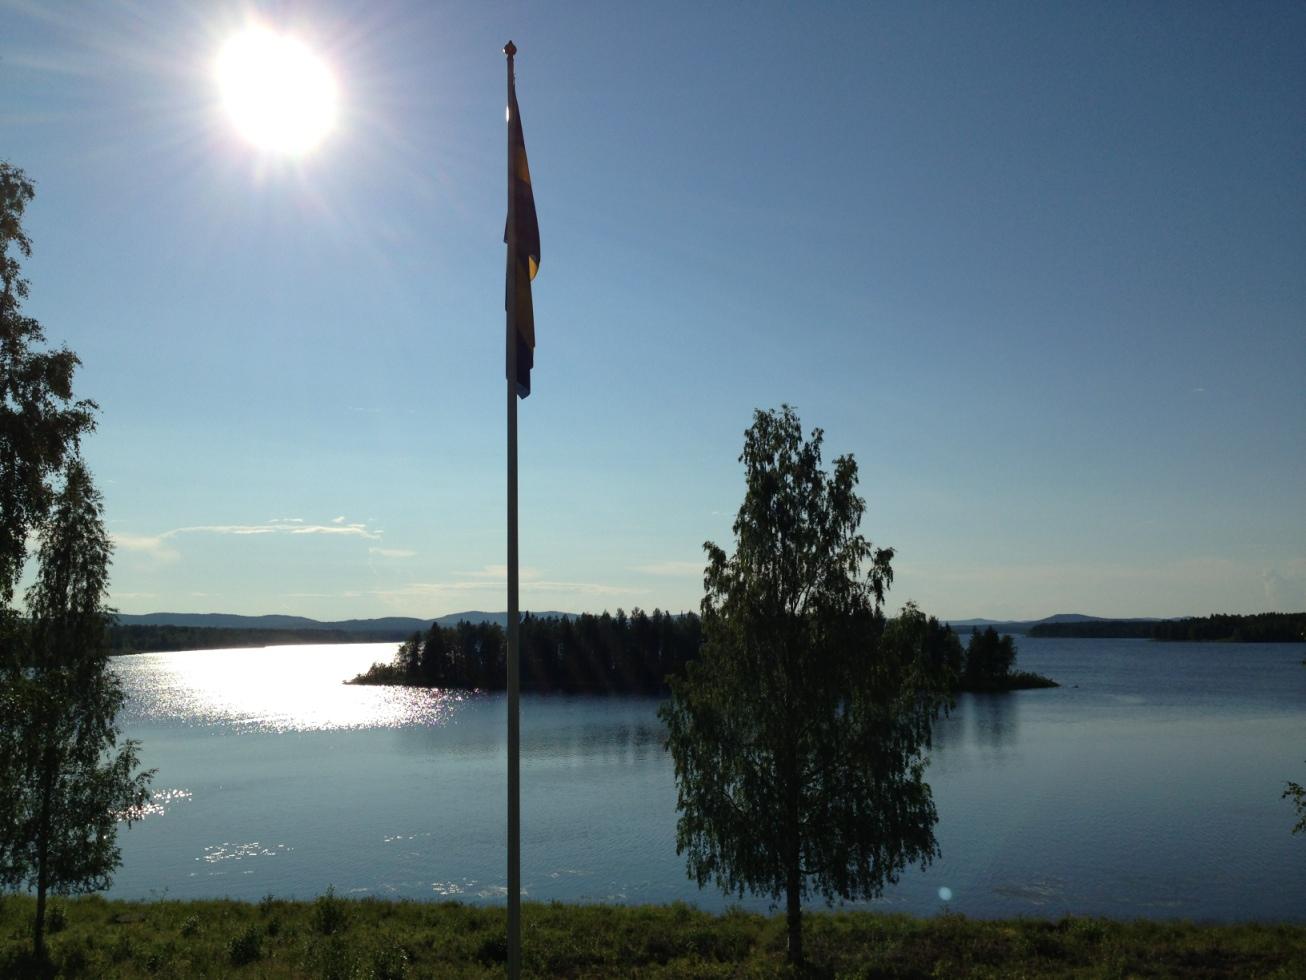 Sommar i härliga Niemisel utanför Råneå i Norrland. Nyplockade hjortron och fin utsikt mot Råneälven.